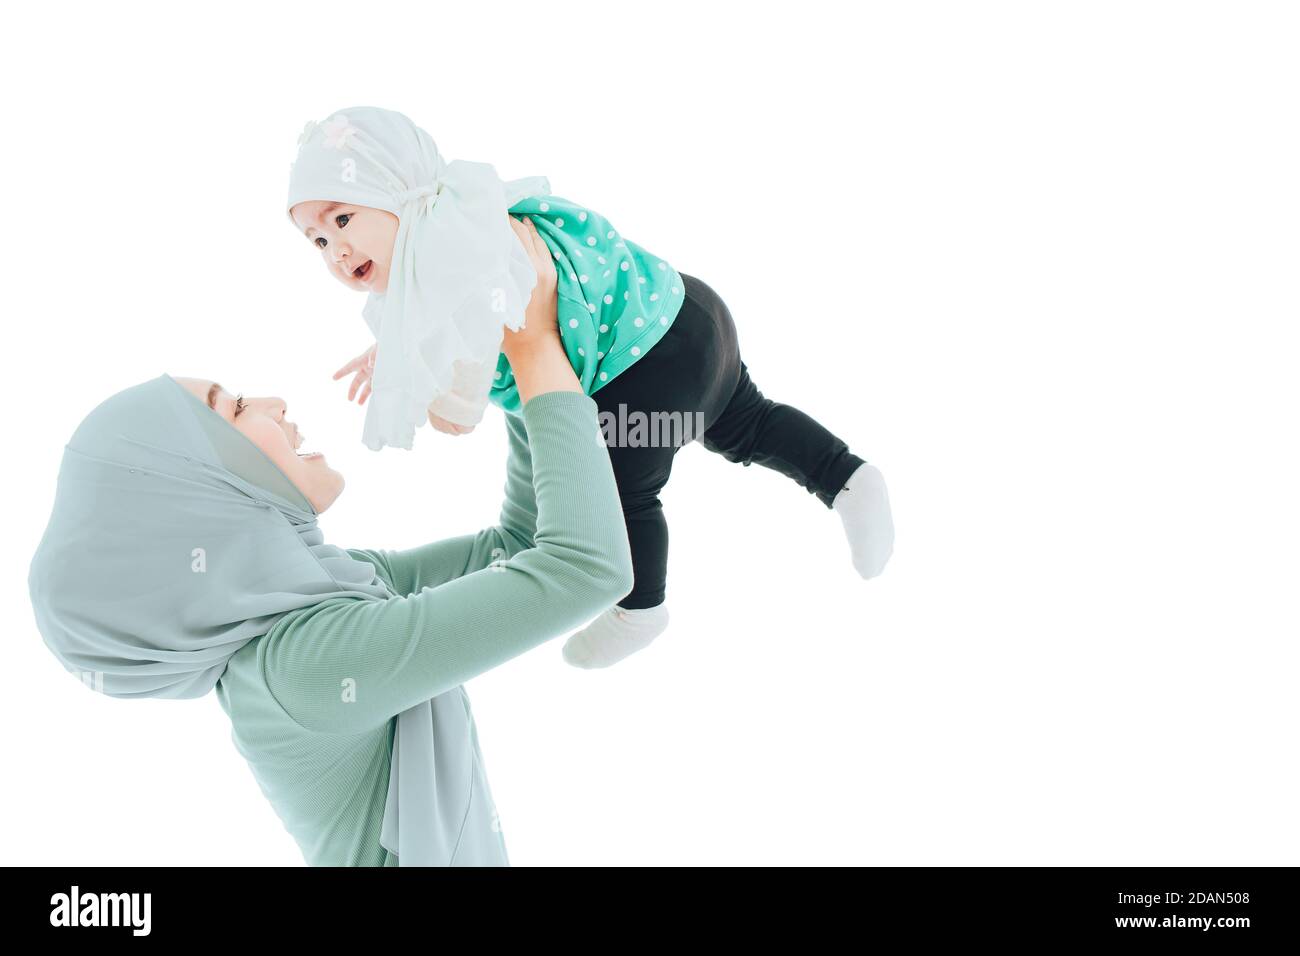 Muslimische Familie oder Islam Mutter aufstehen spielen mit Baby isoliert auf weißem Hintergrund. Stockfoto